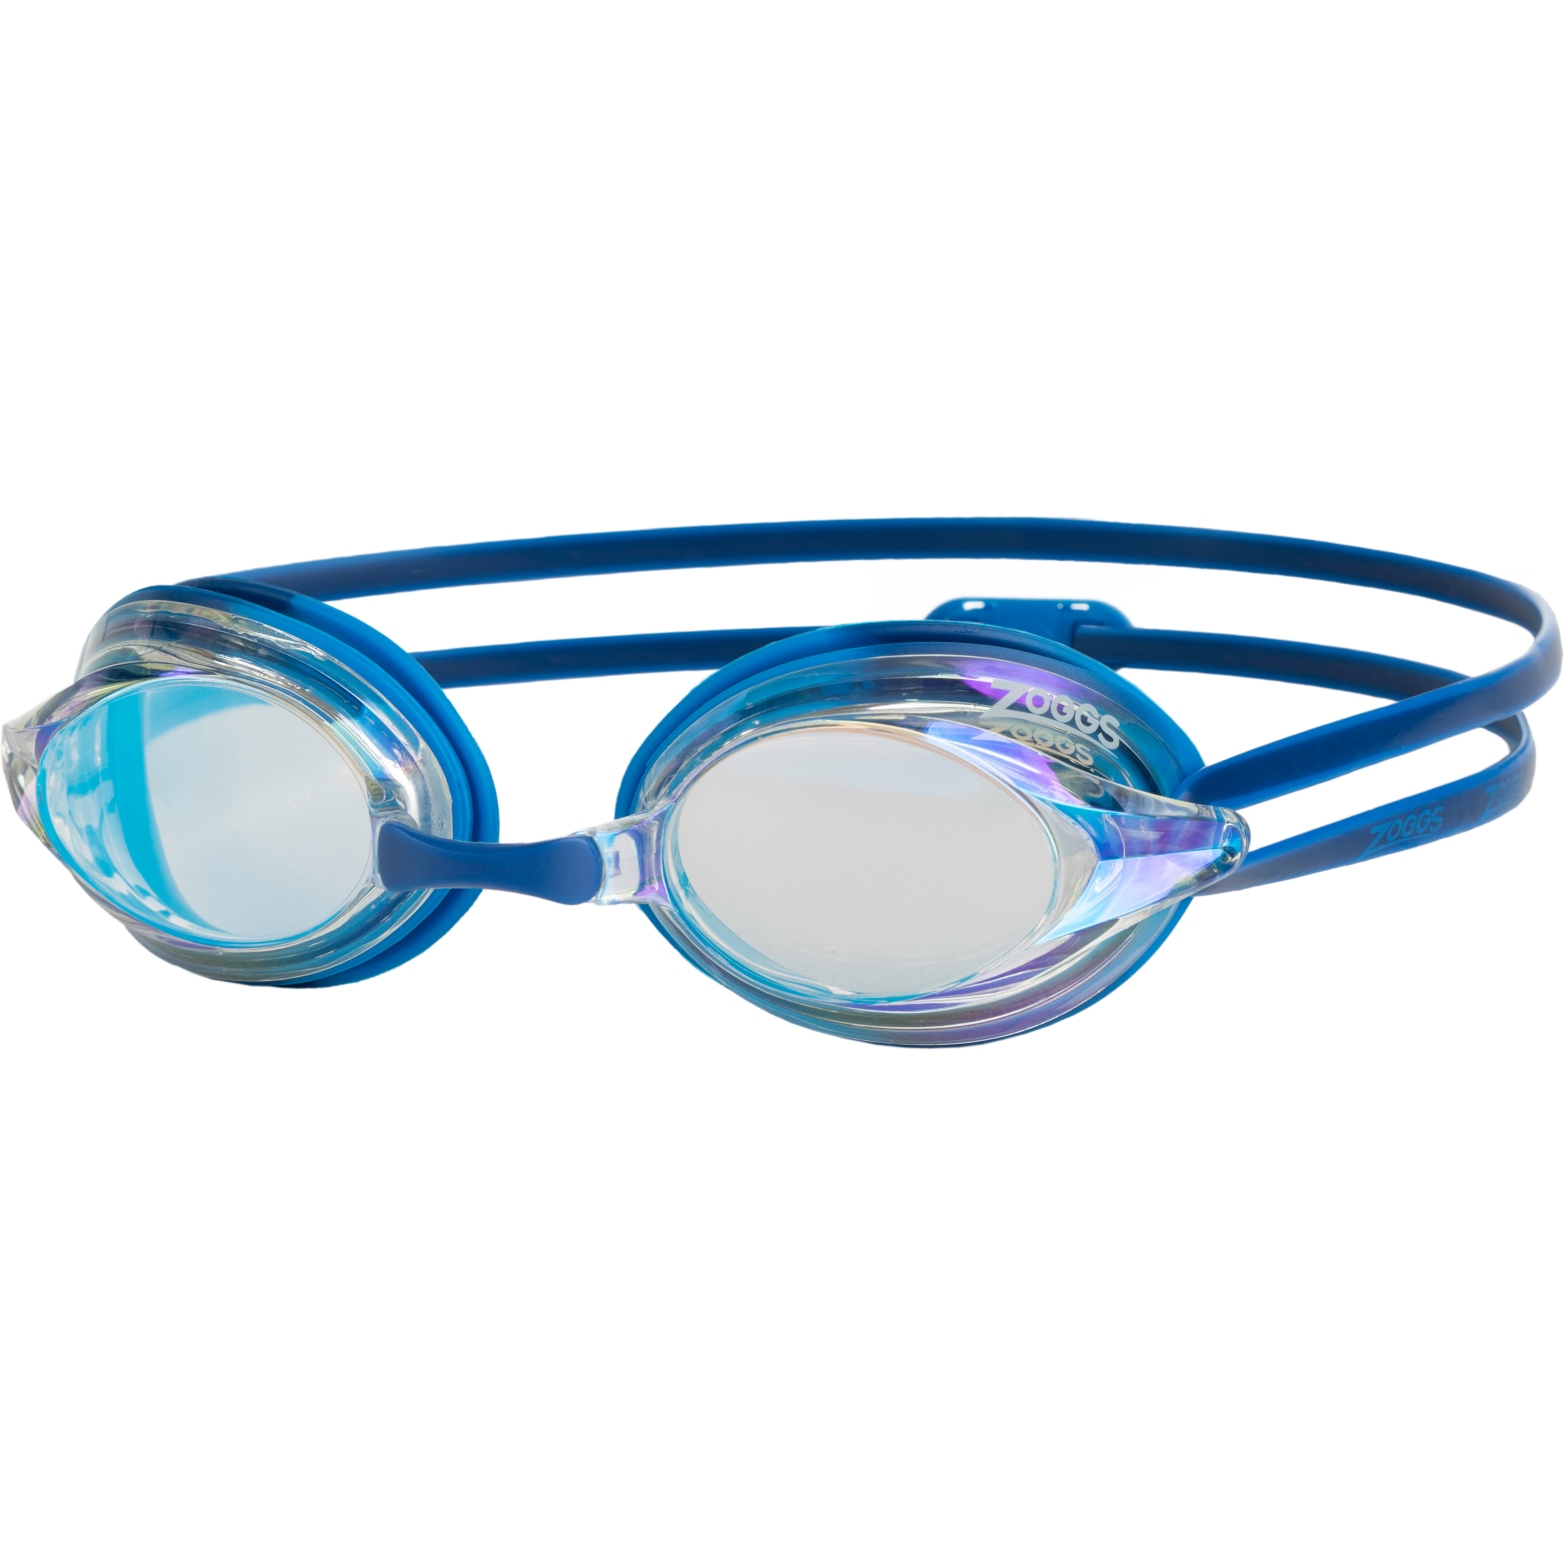 Productfoto van Zoggs Racer Titanium Zwembril - Mirror Clear Lenses - Blue/Light Blue